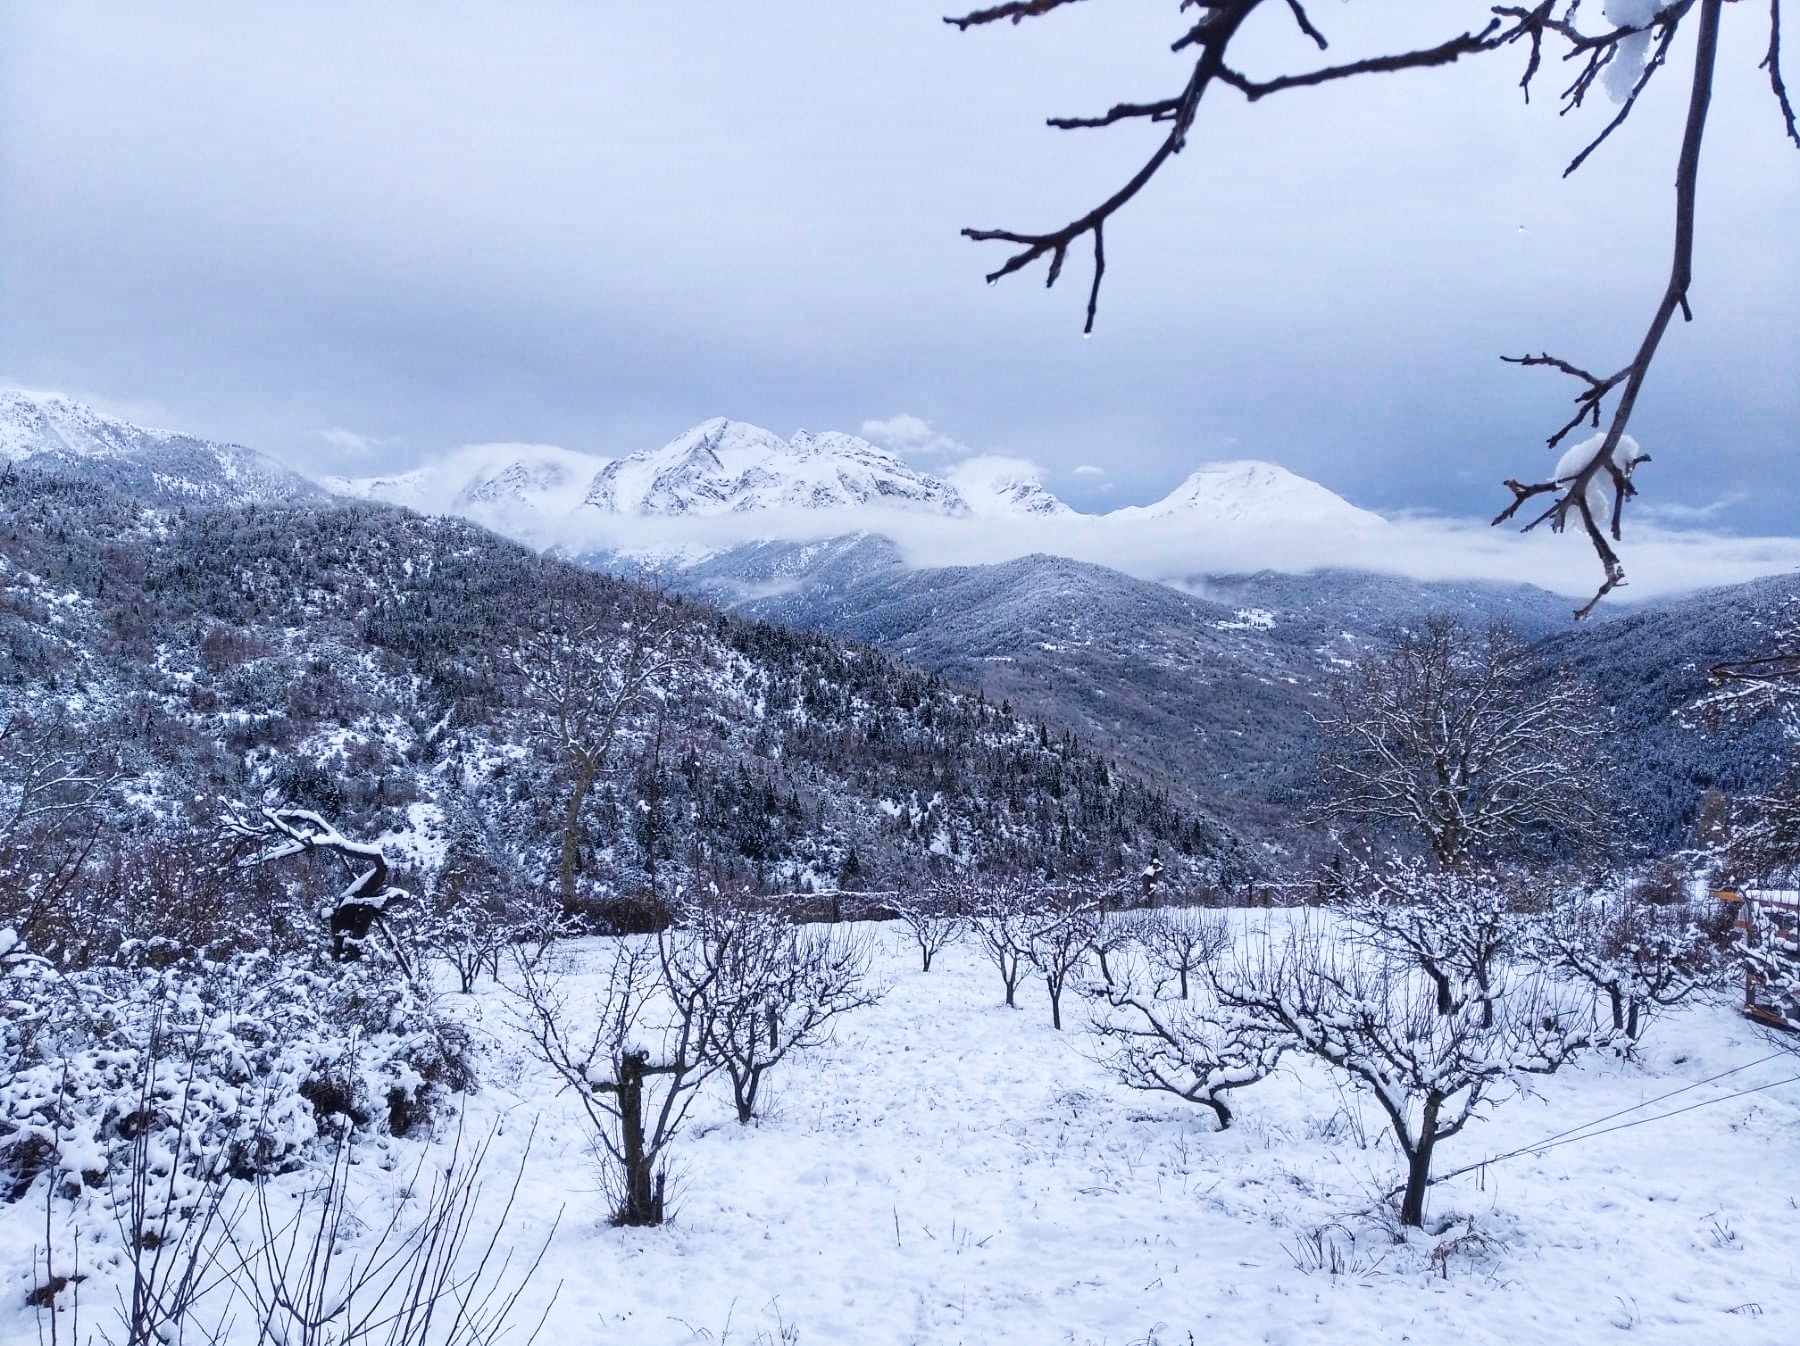 Γραμμένη Οξυά: Οδοιπορικό στο χωριό της Ορεινής Ναυπακτίας με τη γραφική ομορφιά